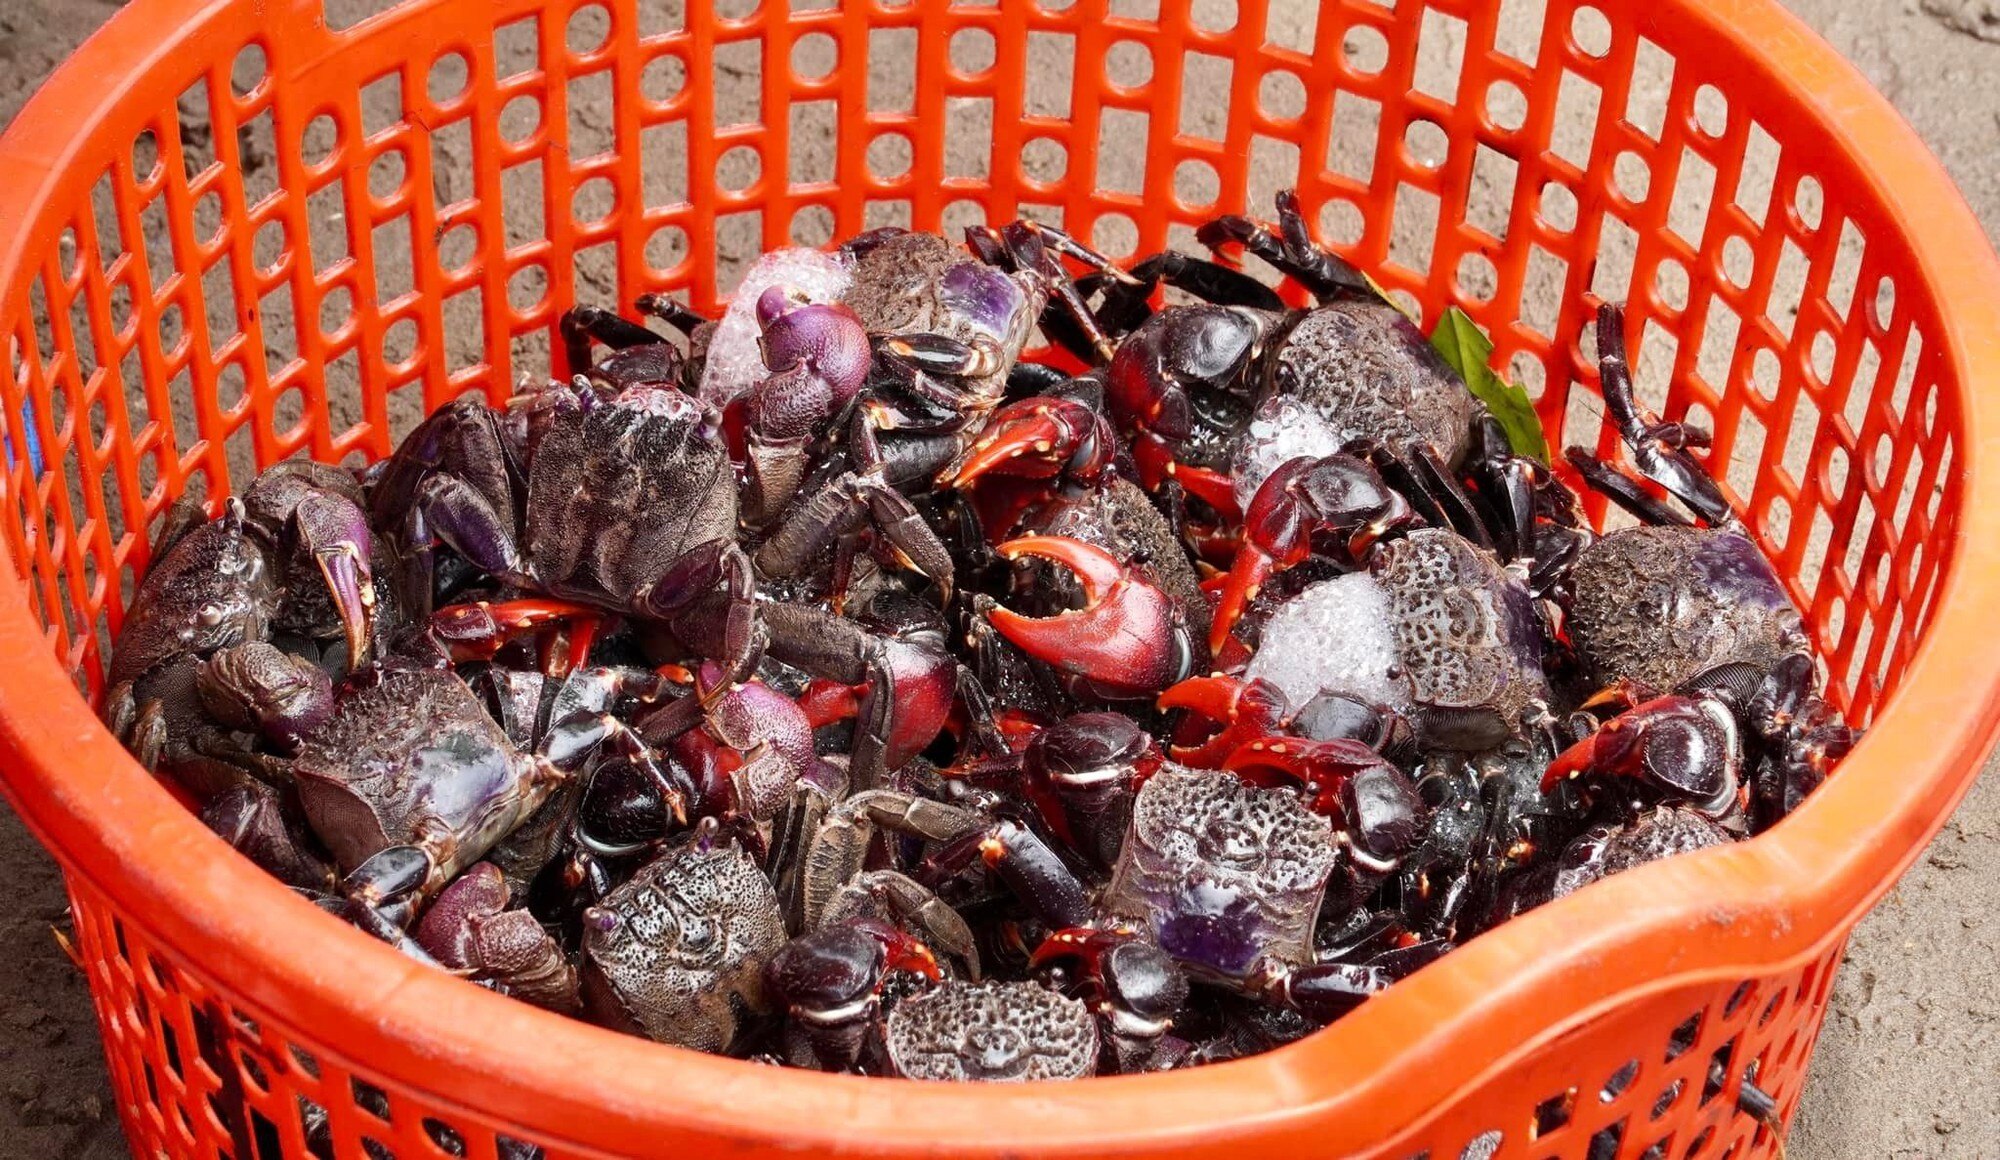 Chợ biển ở một huyện của Bến Tre họp ngay mép sóng, mua bán la liệt tôm, cua, cá, ốc ngon, lạ mắt- Ảnh 10.